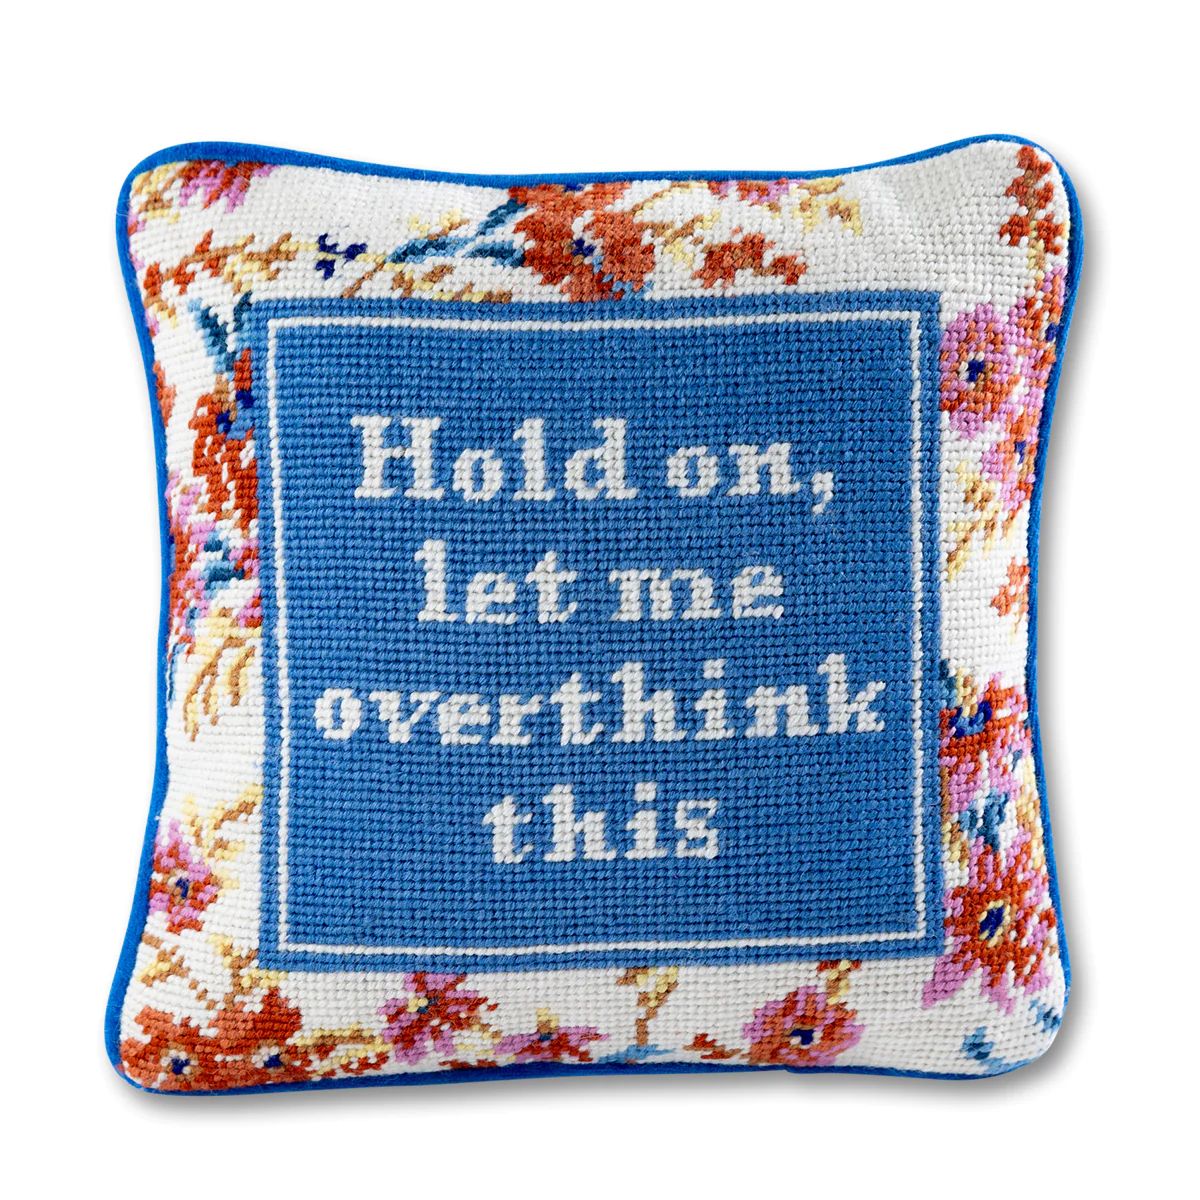 Overthink Needlepoint Pillow | Furbish Studio